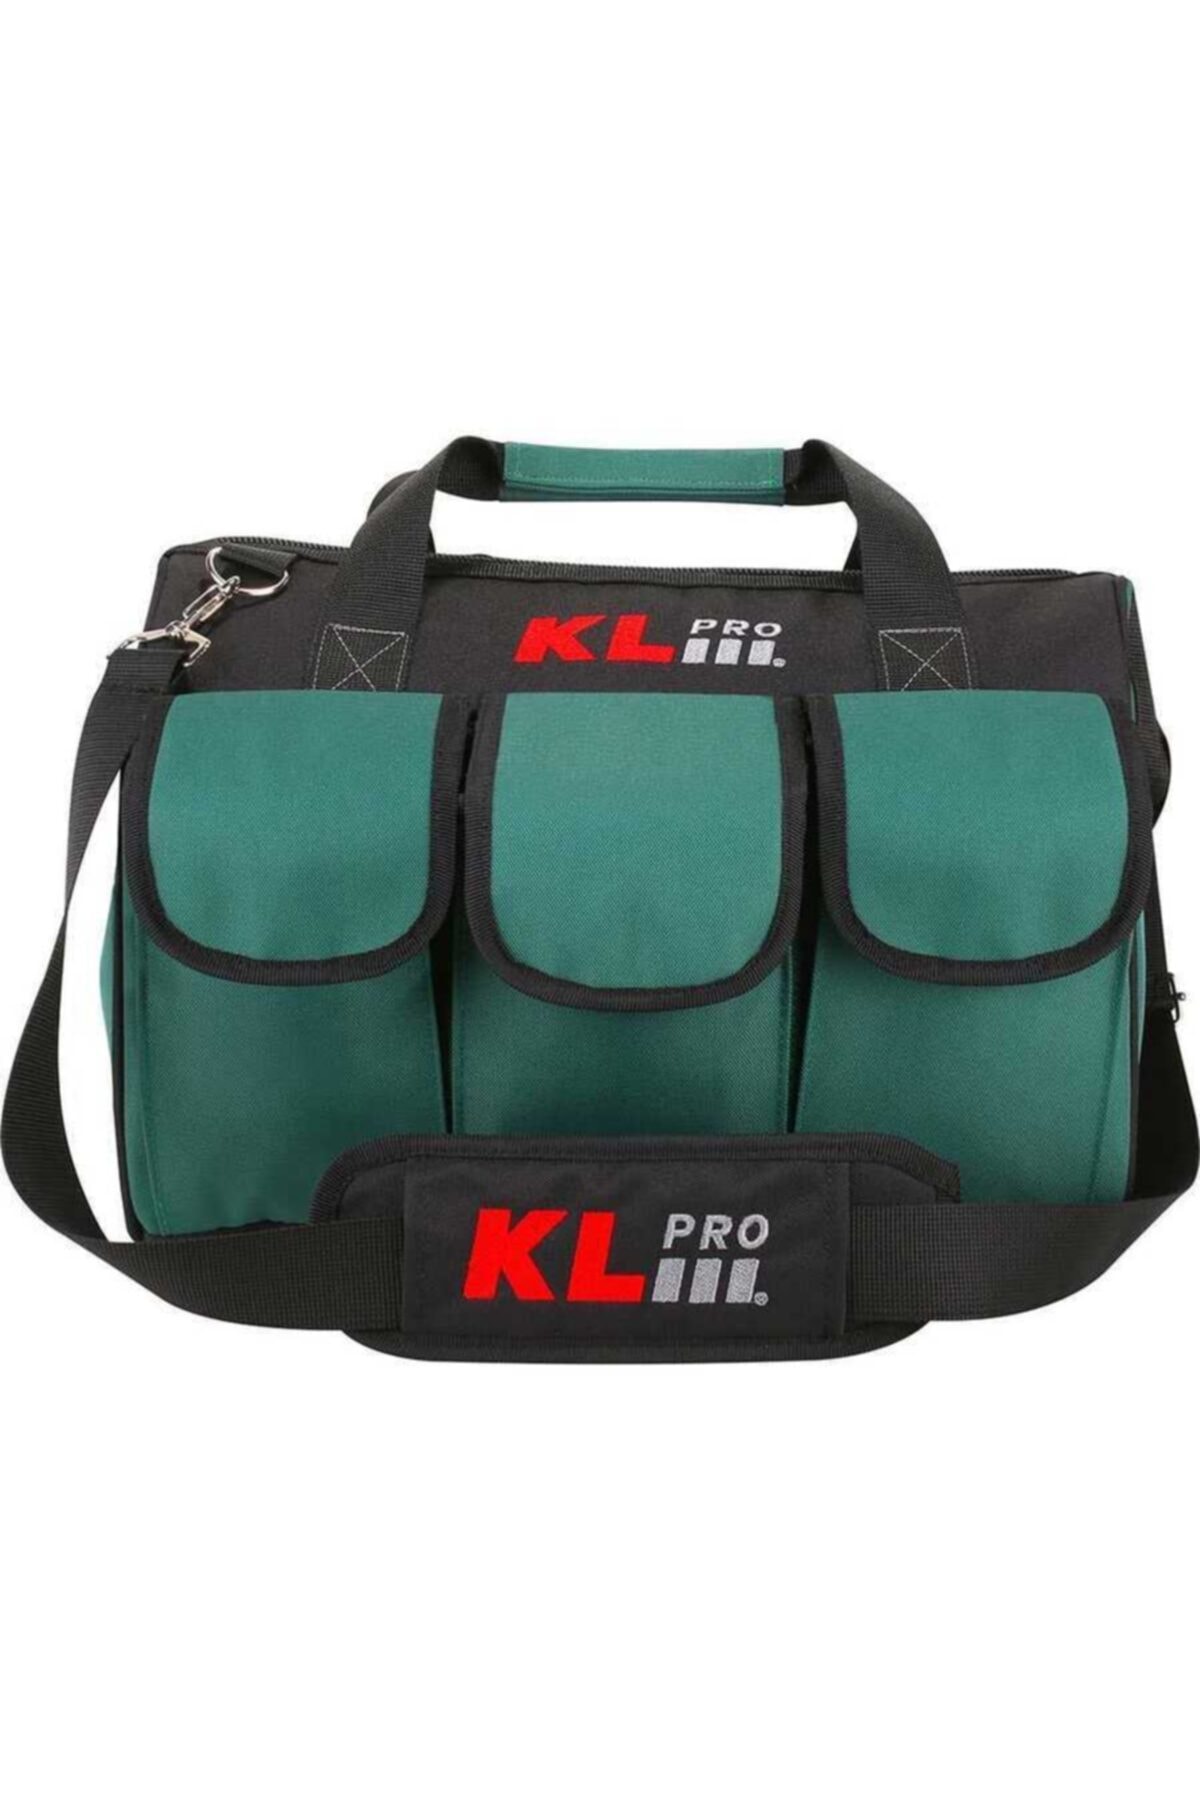 KLPRO Orta Boy Alet Taşıma çantası Kltct16